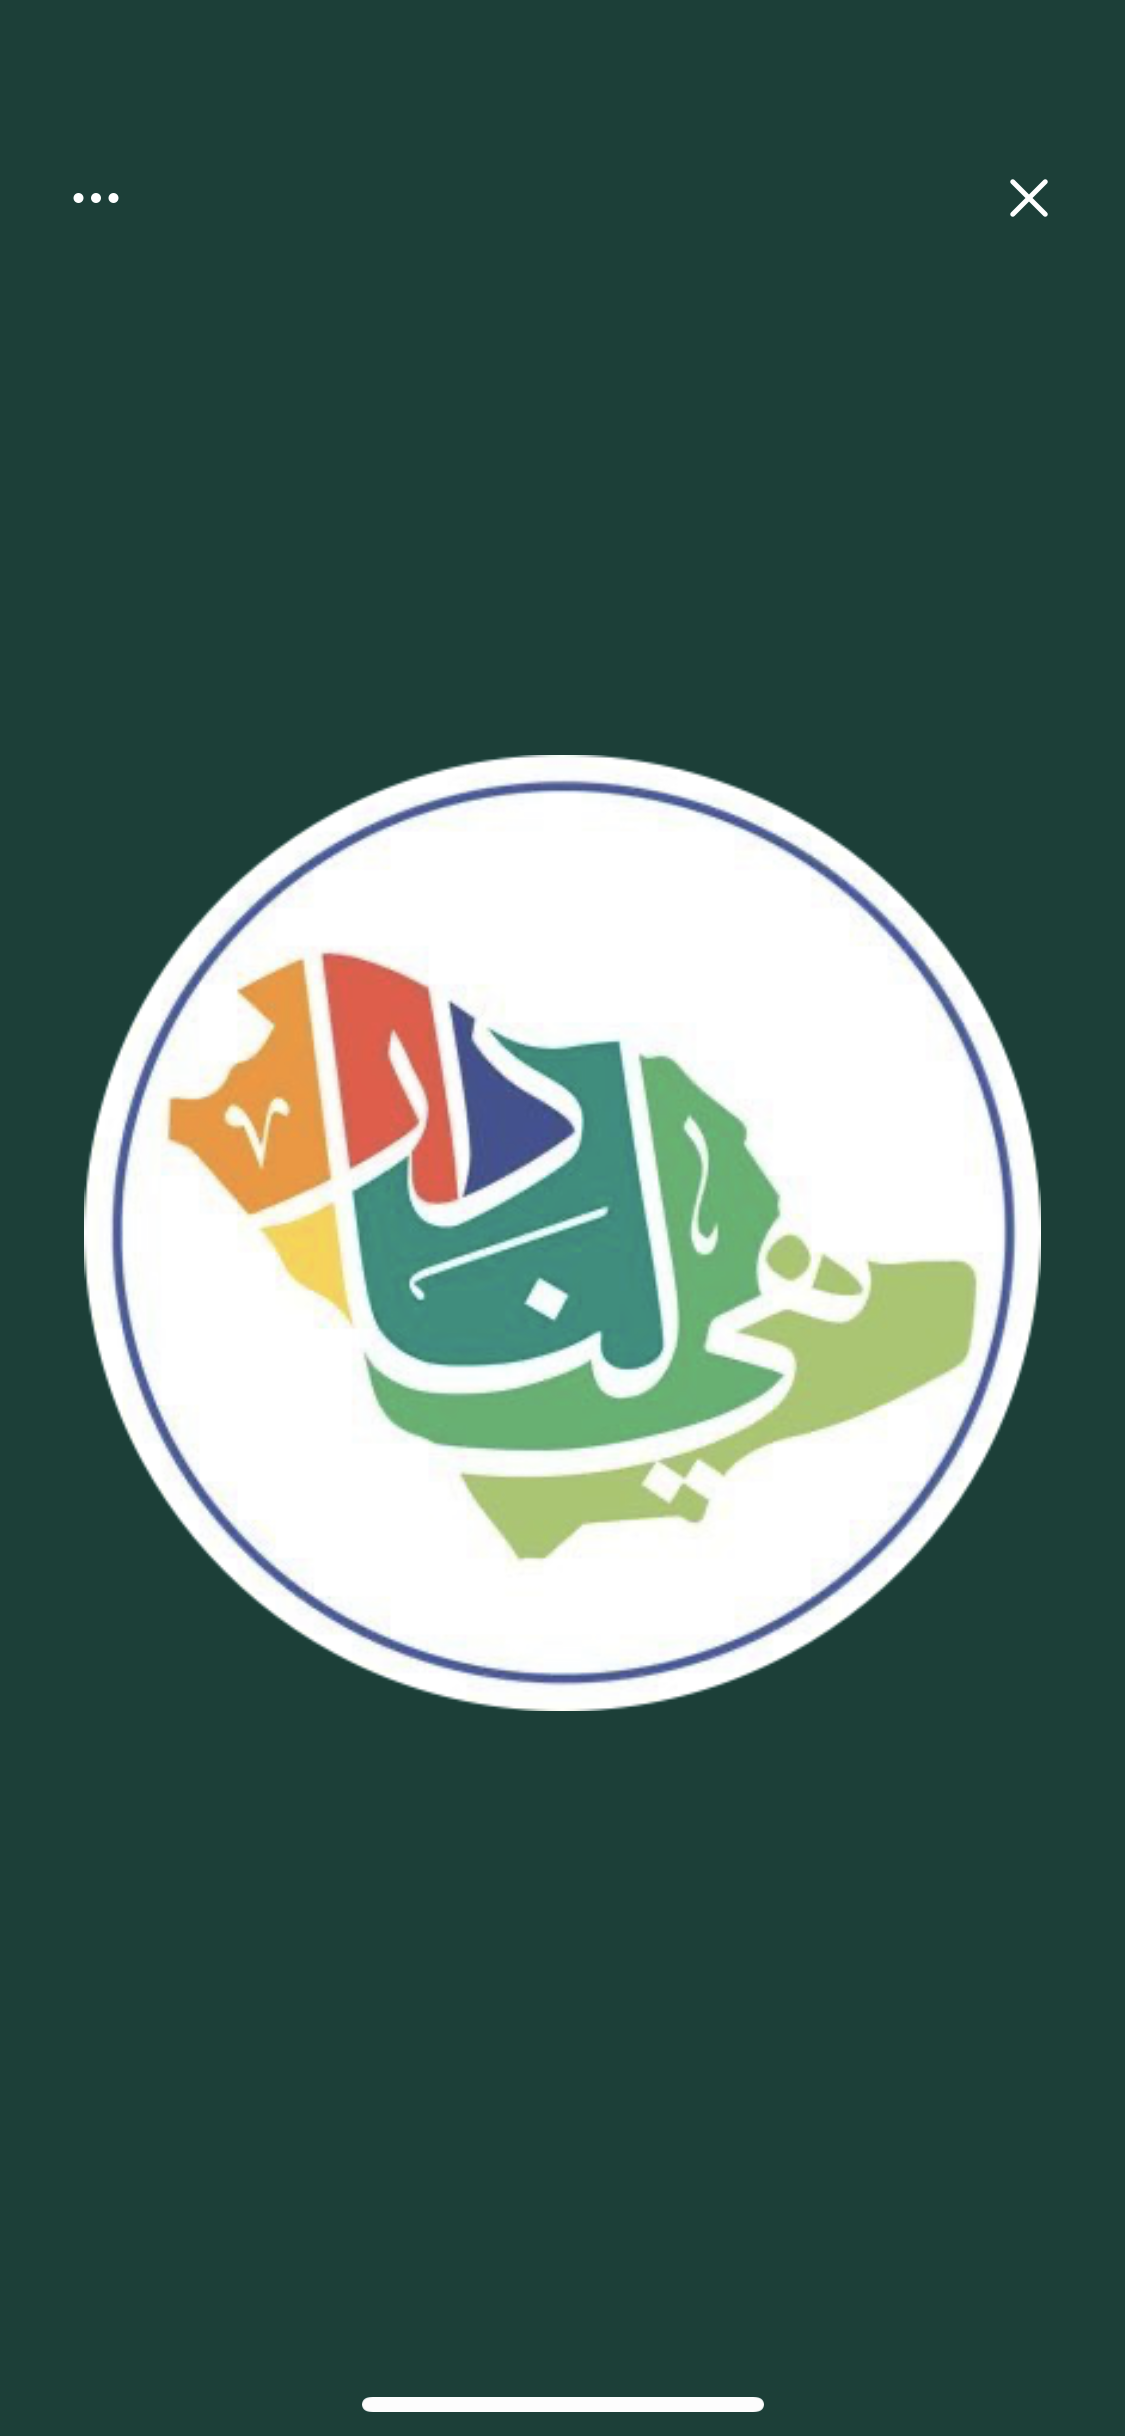 1- احتفالات مدارس الملك عبدالعزيز النموذجية باليوم الوطني 91